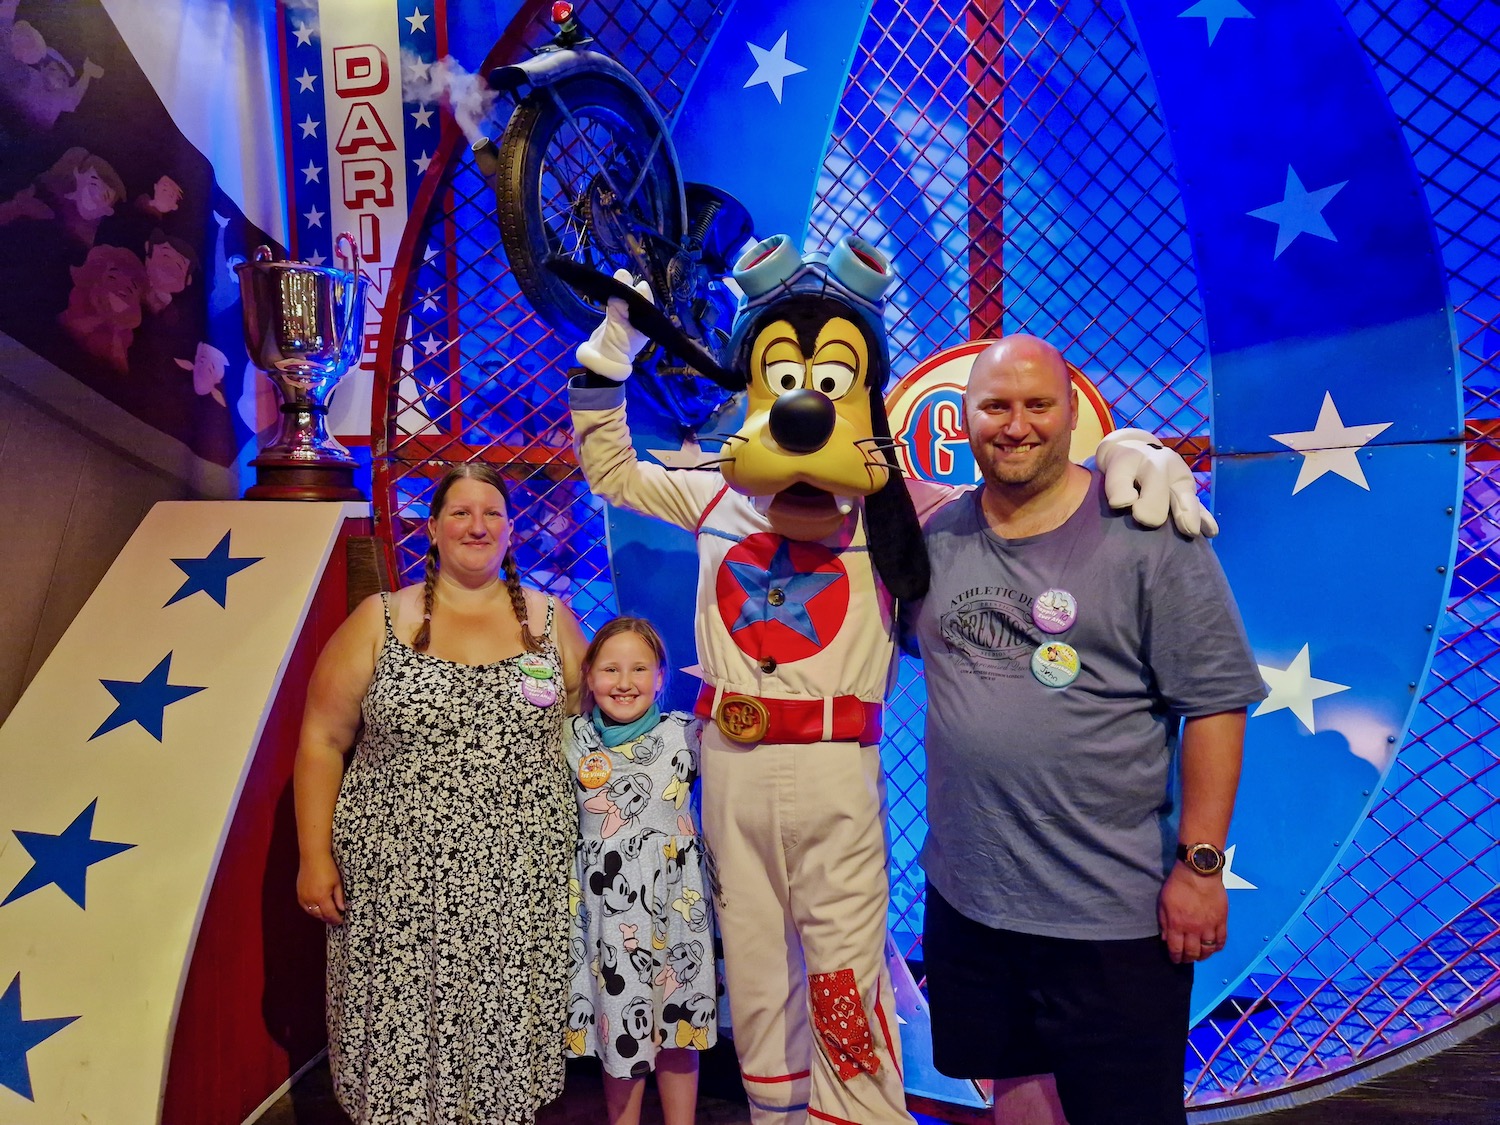 Family photo meeting Goofy at Magic Kingdom